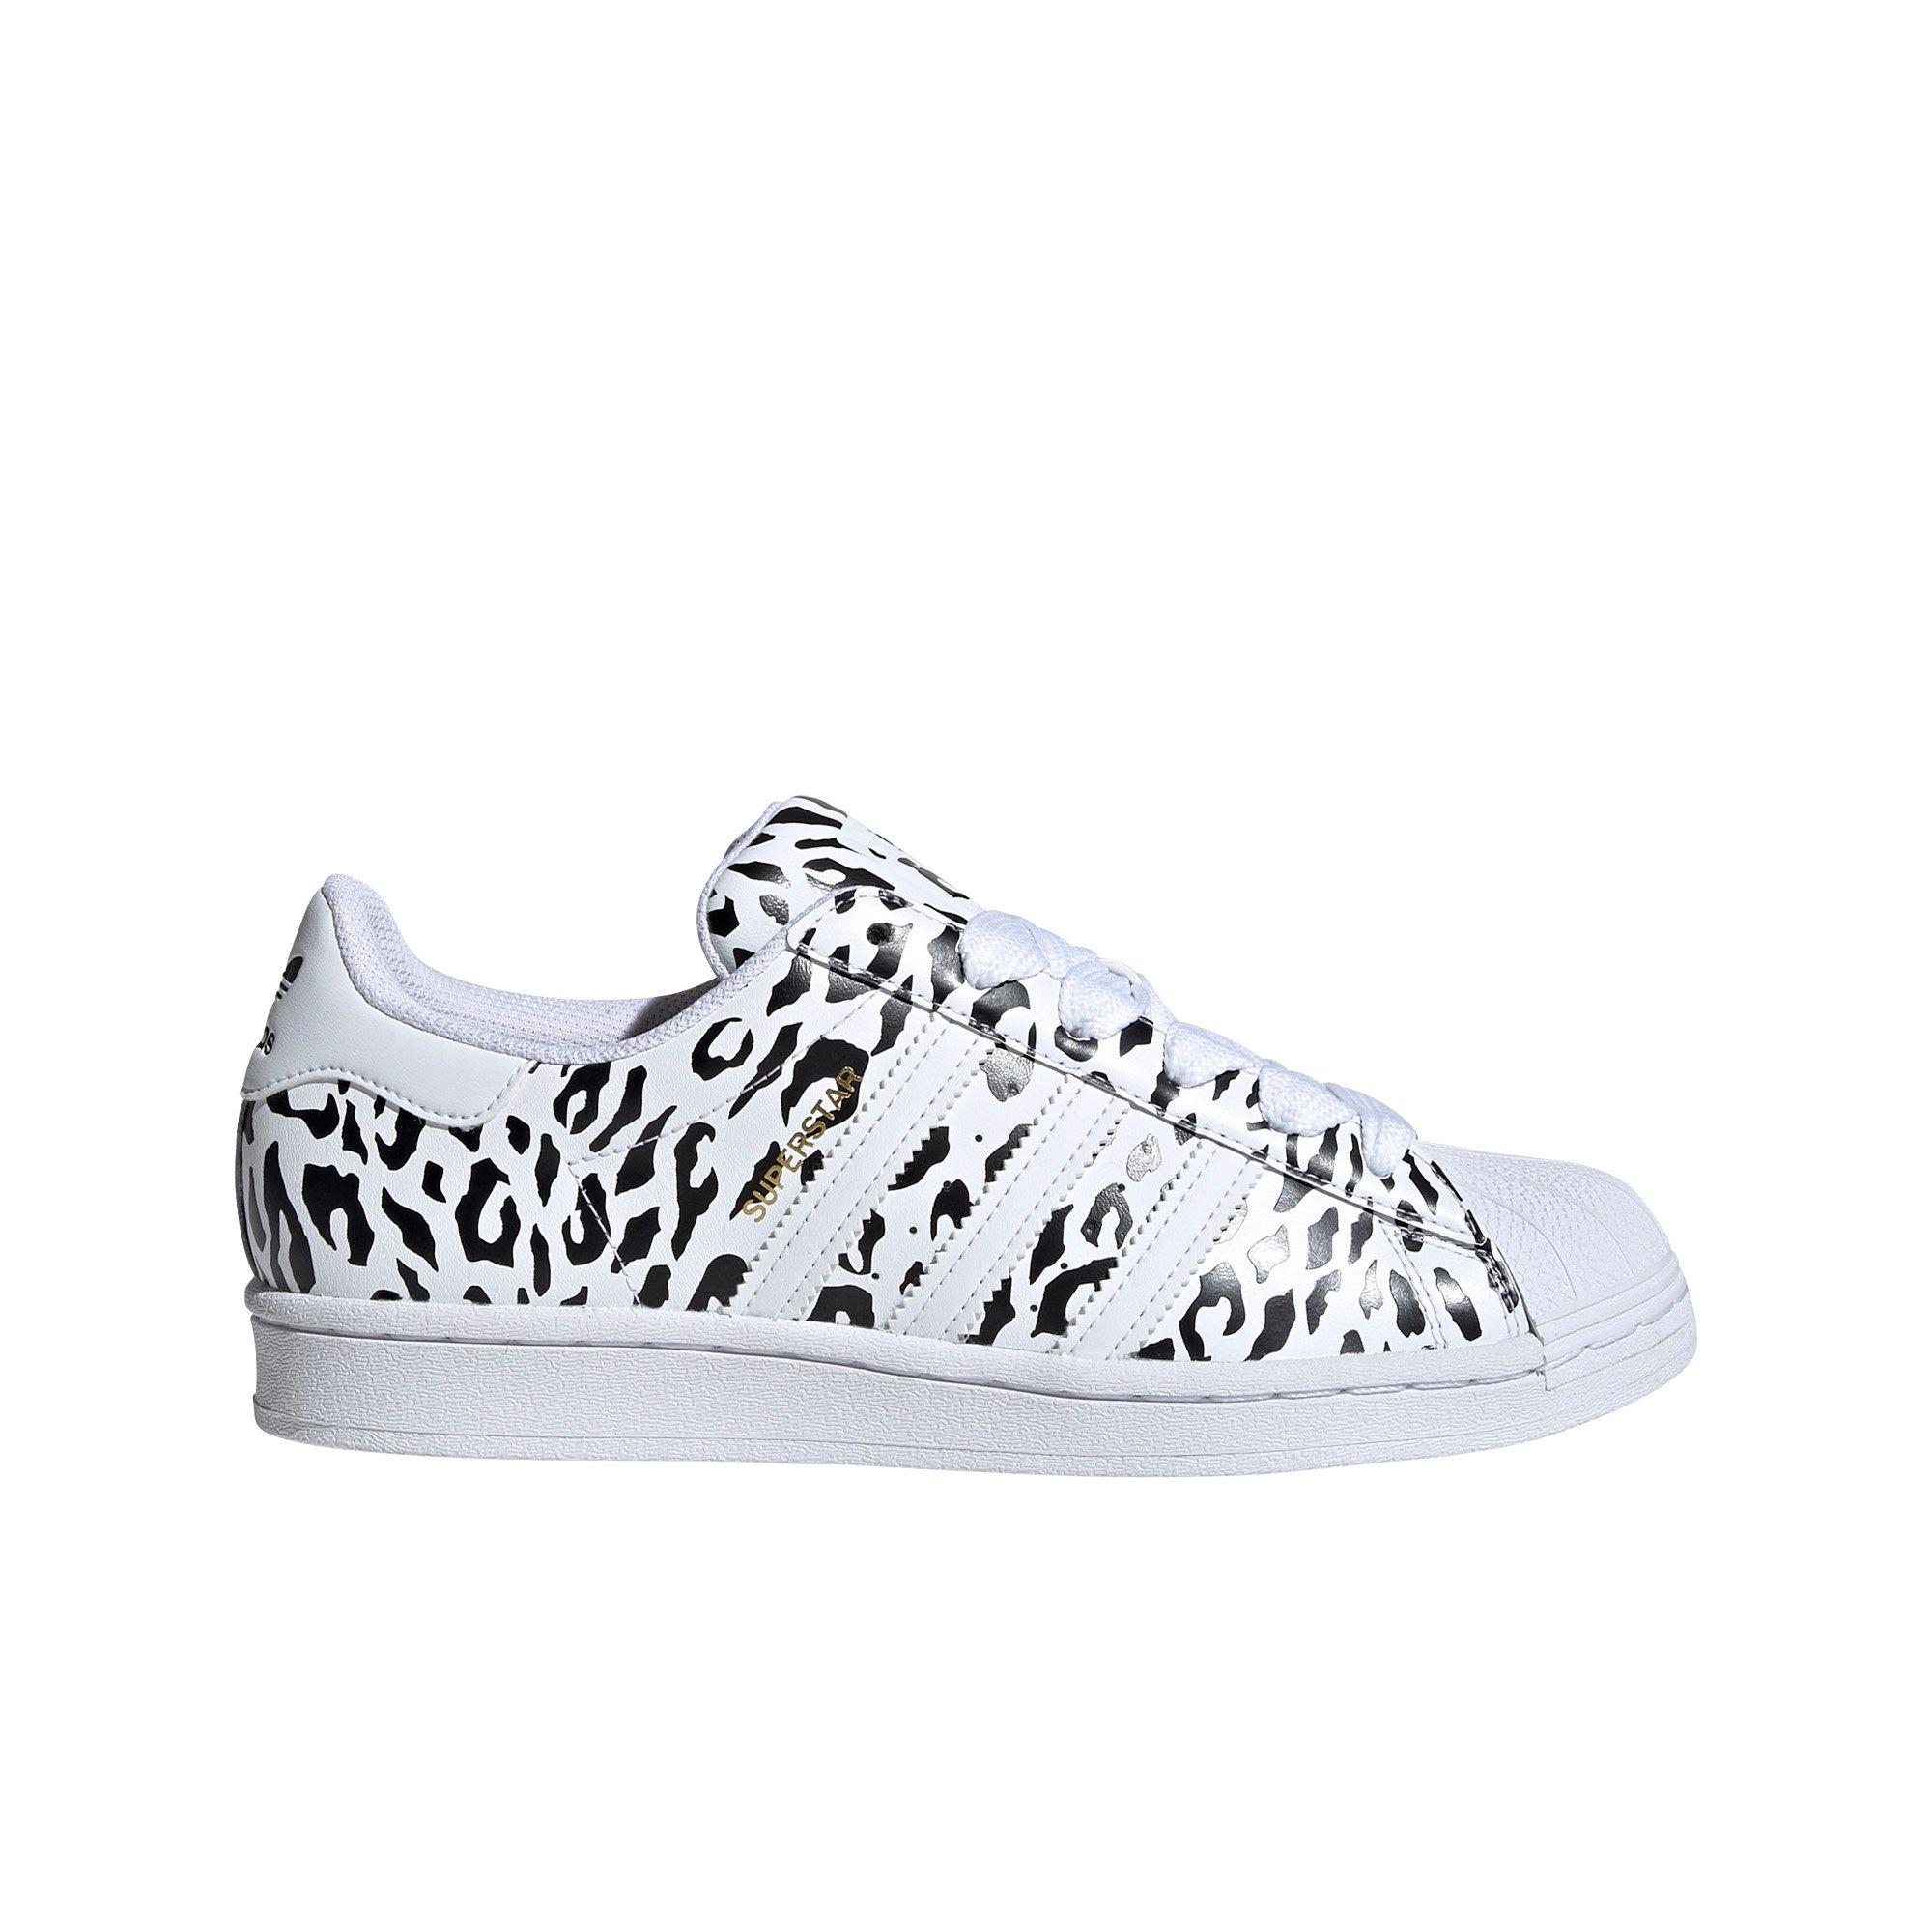 adidas shoes cheetah